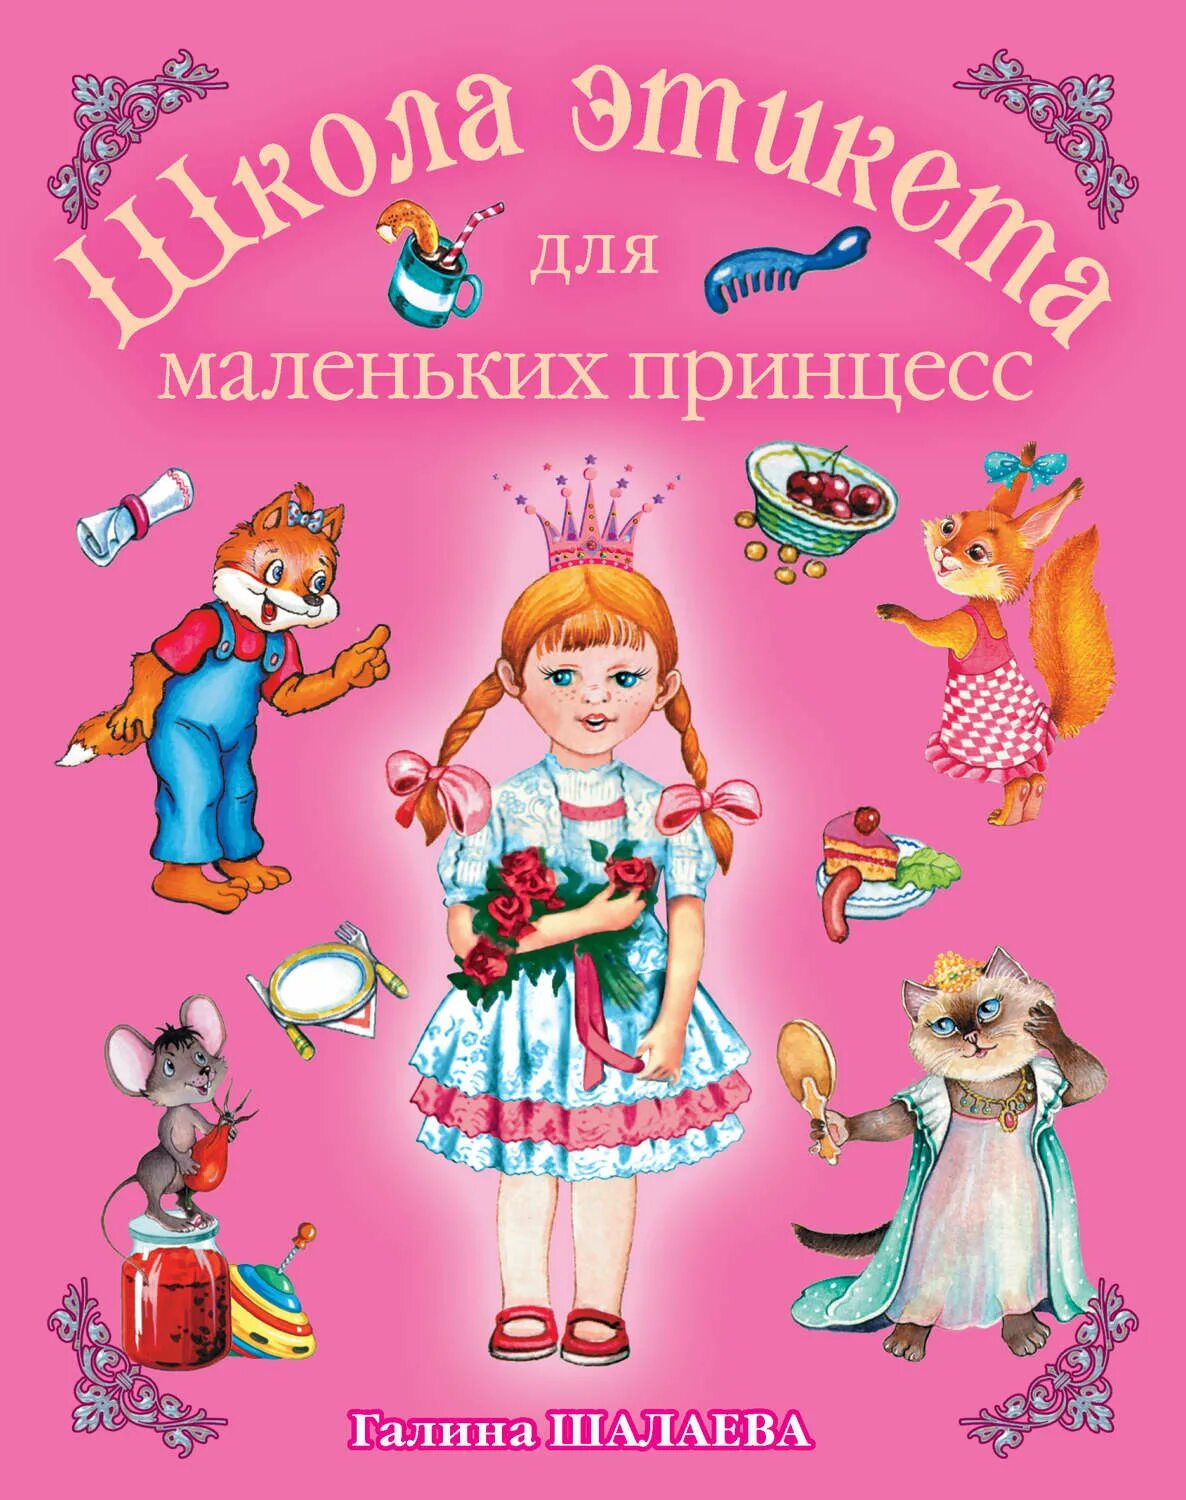 Книги галины шалаевой. Школа этикета для маленьких принцесс Шалаева. Книги про этикет для детей.